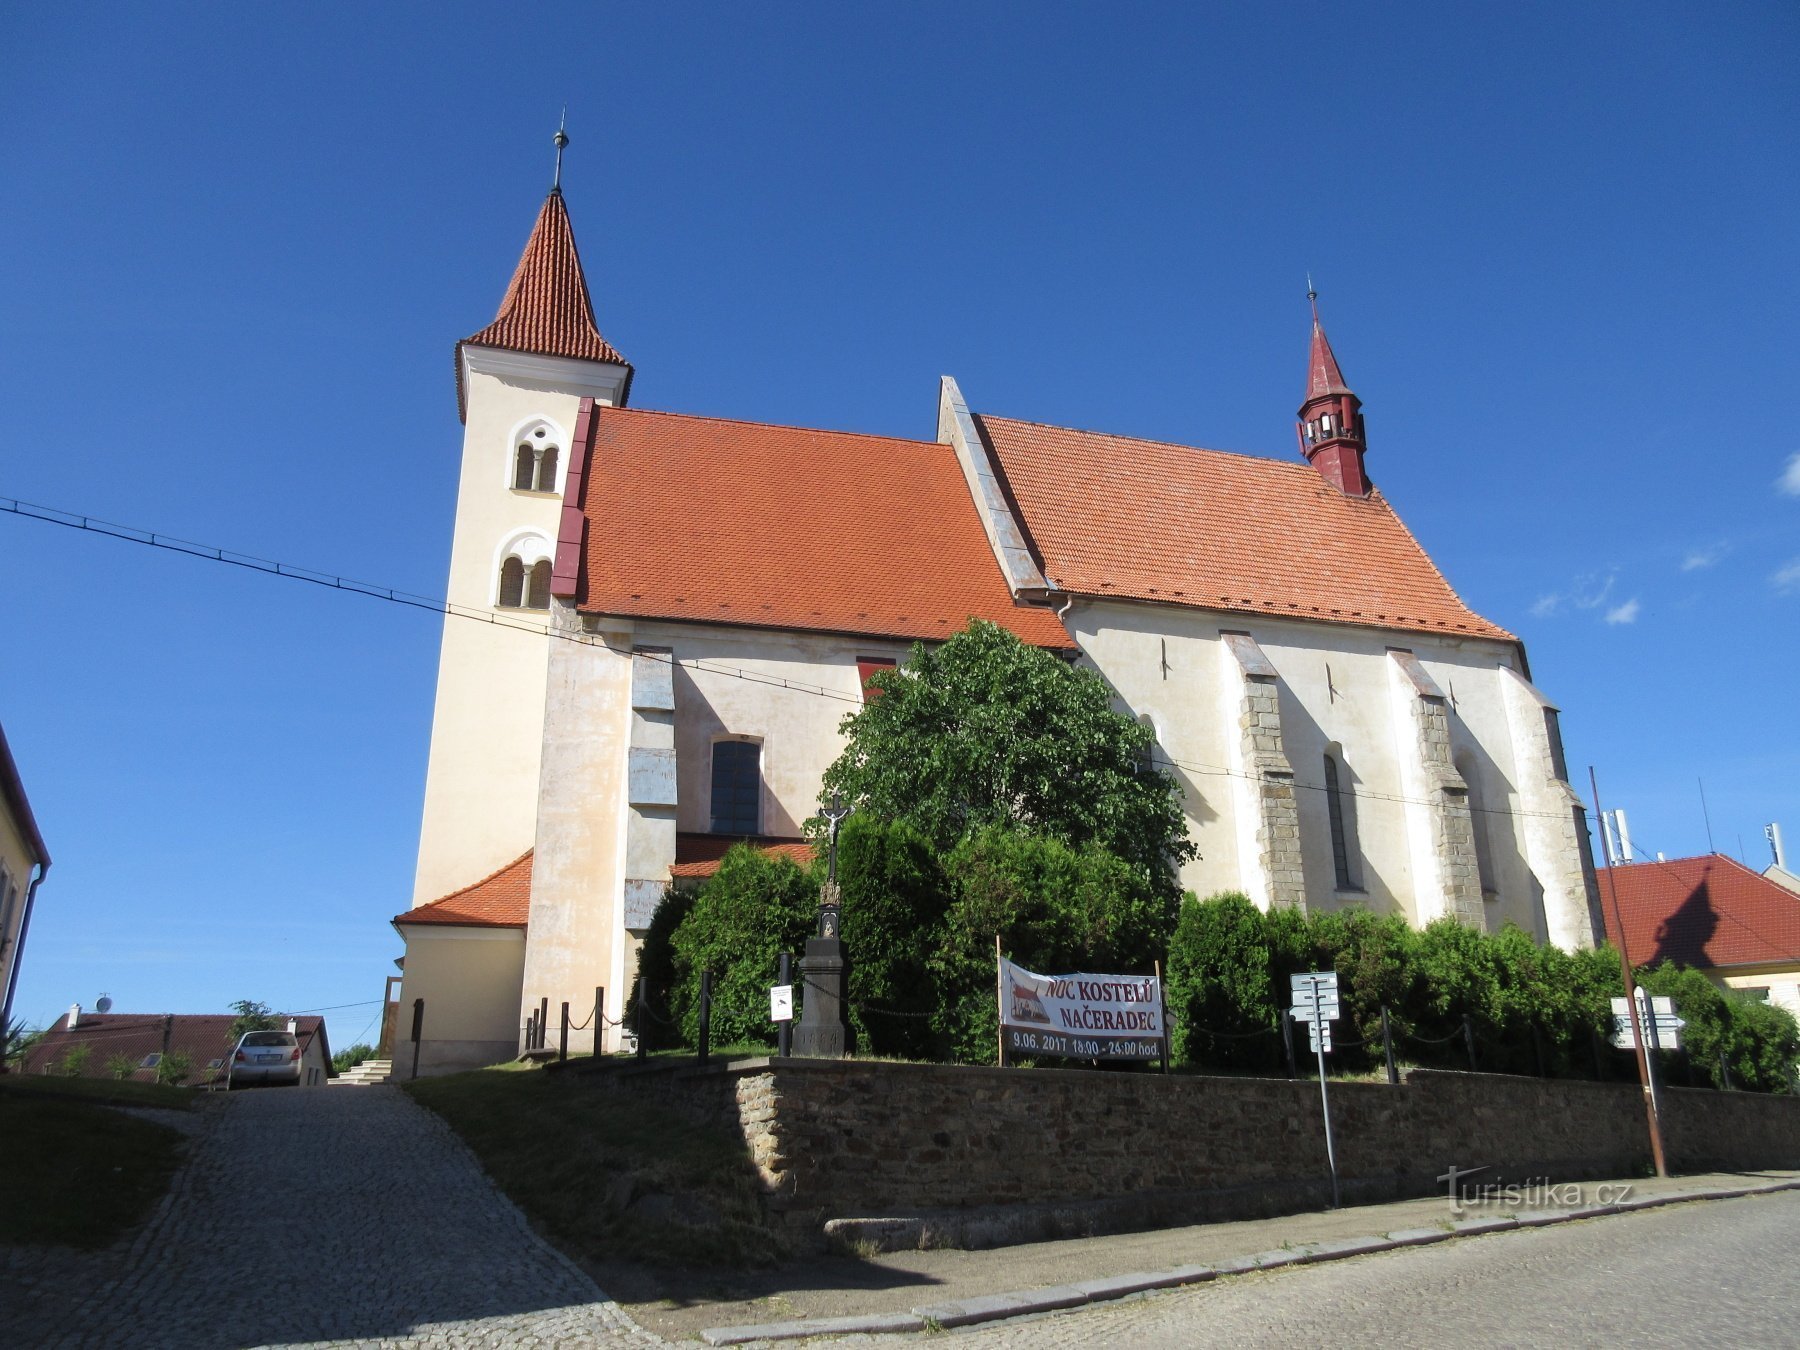 Načeradec - nhà thờ và pháo đài